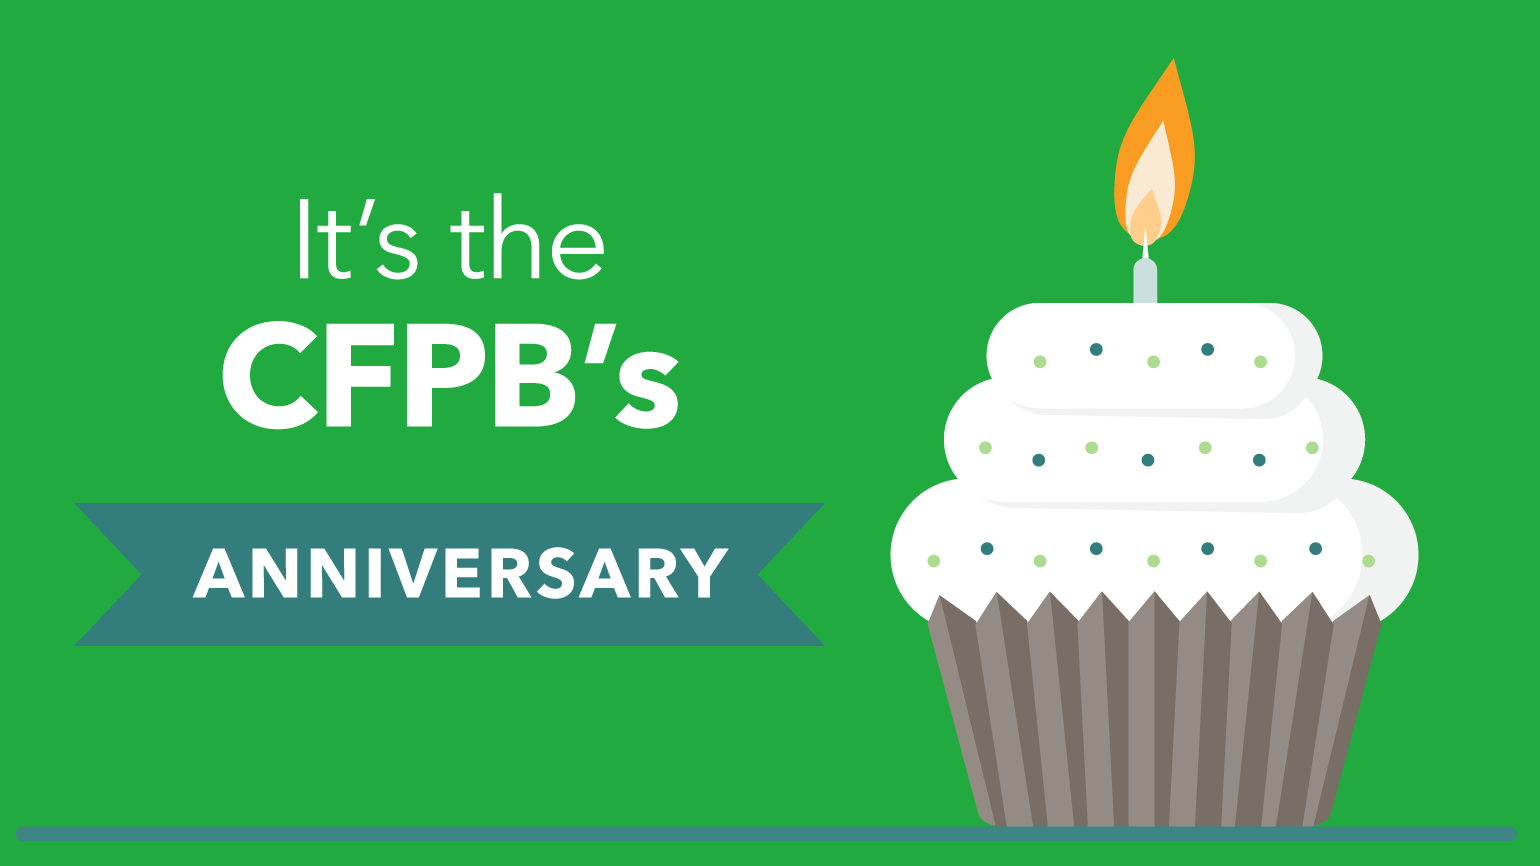 It's the CFPB's anniversary